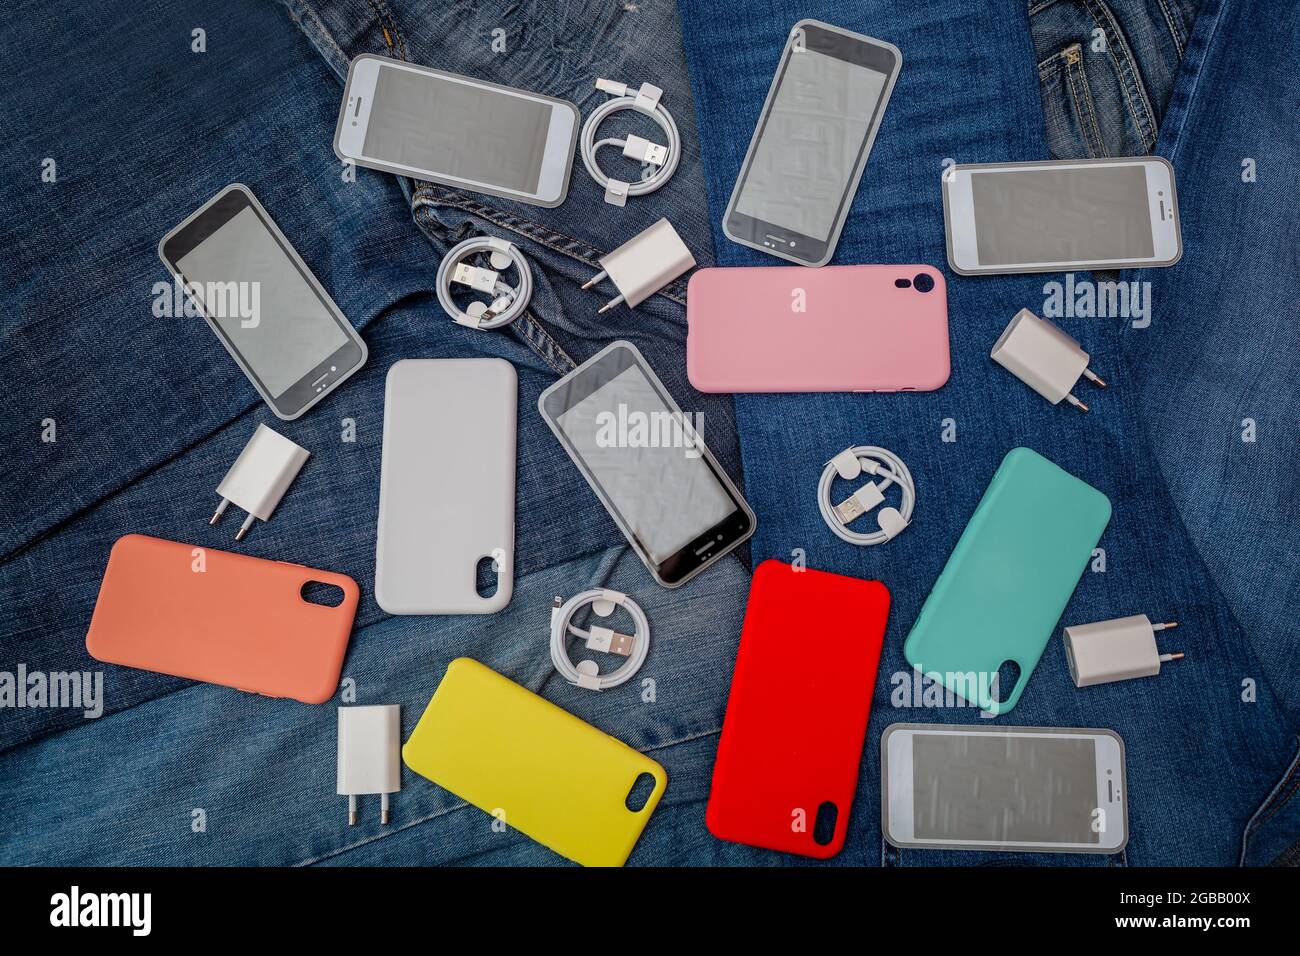 Textur von Handy-Accessoires auf einem Denim-Hintergrund Stockfotografie -  Alamy